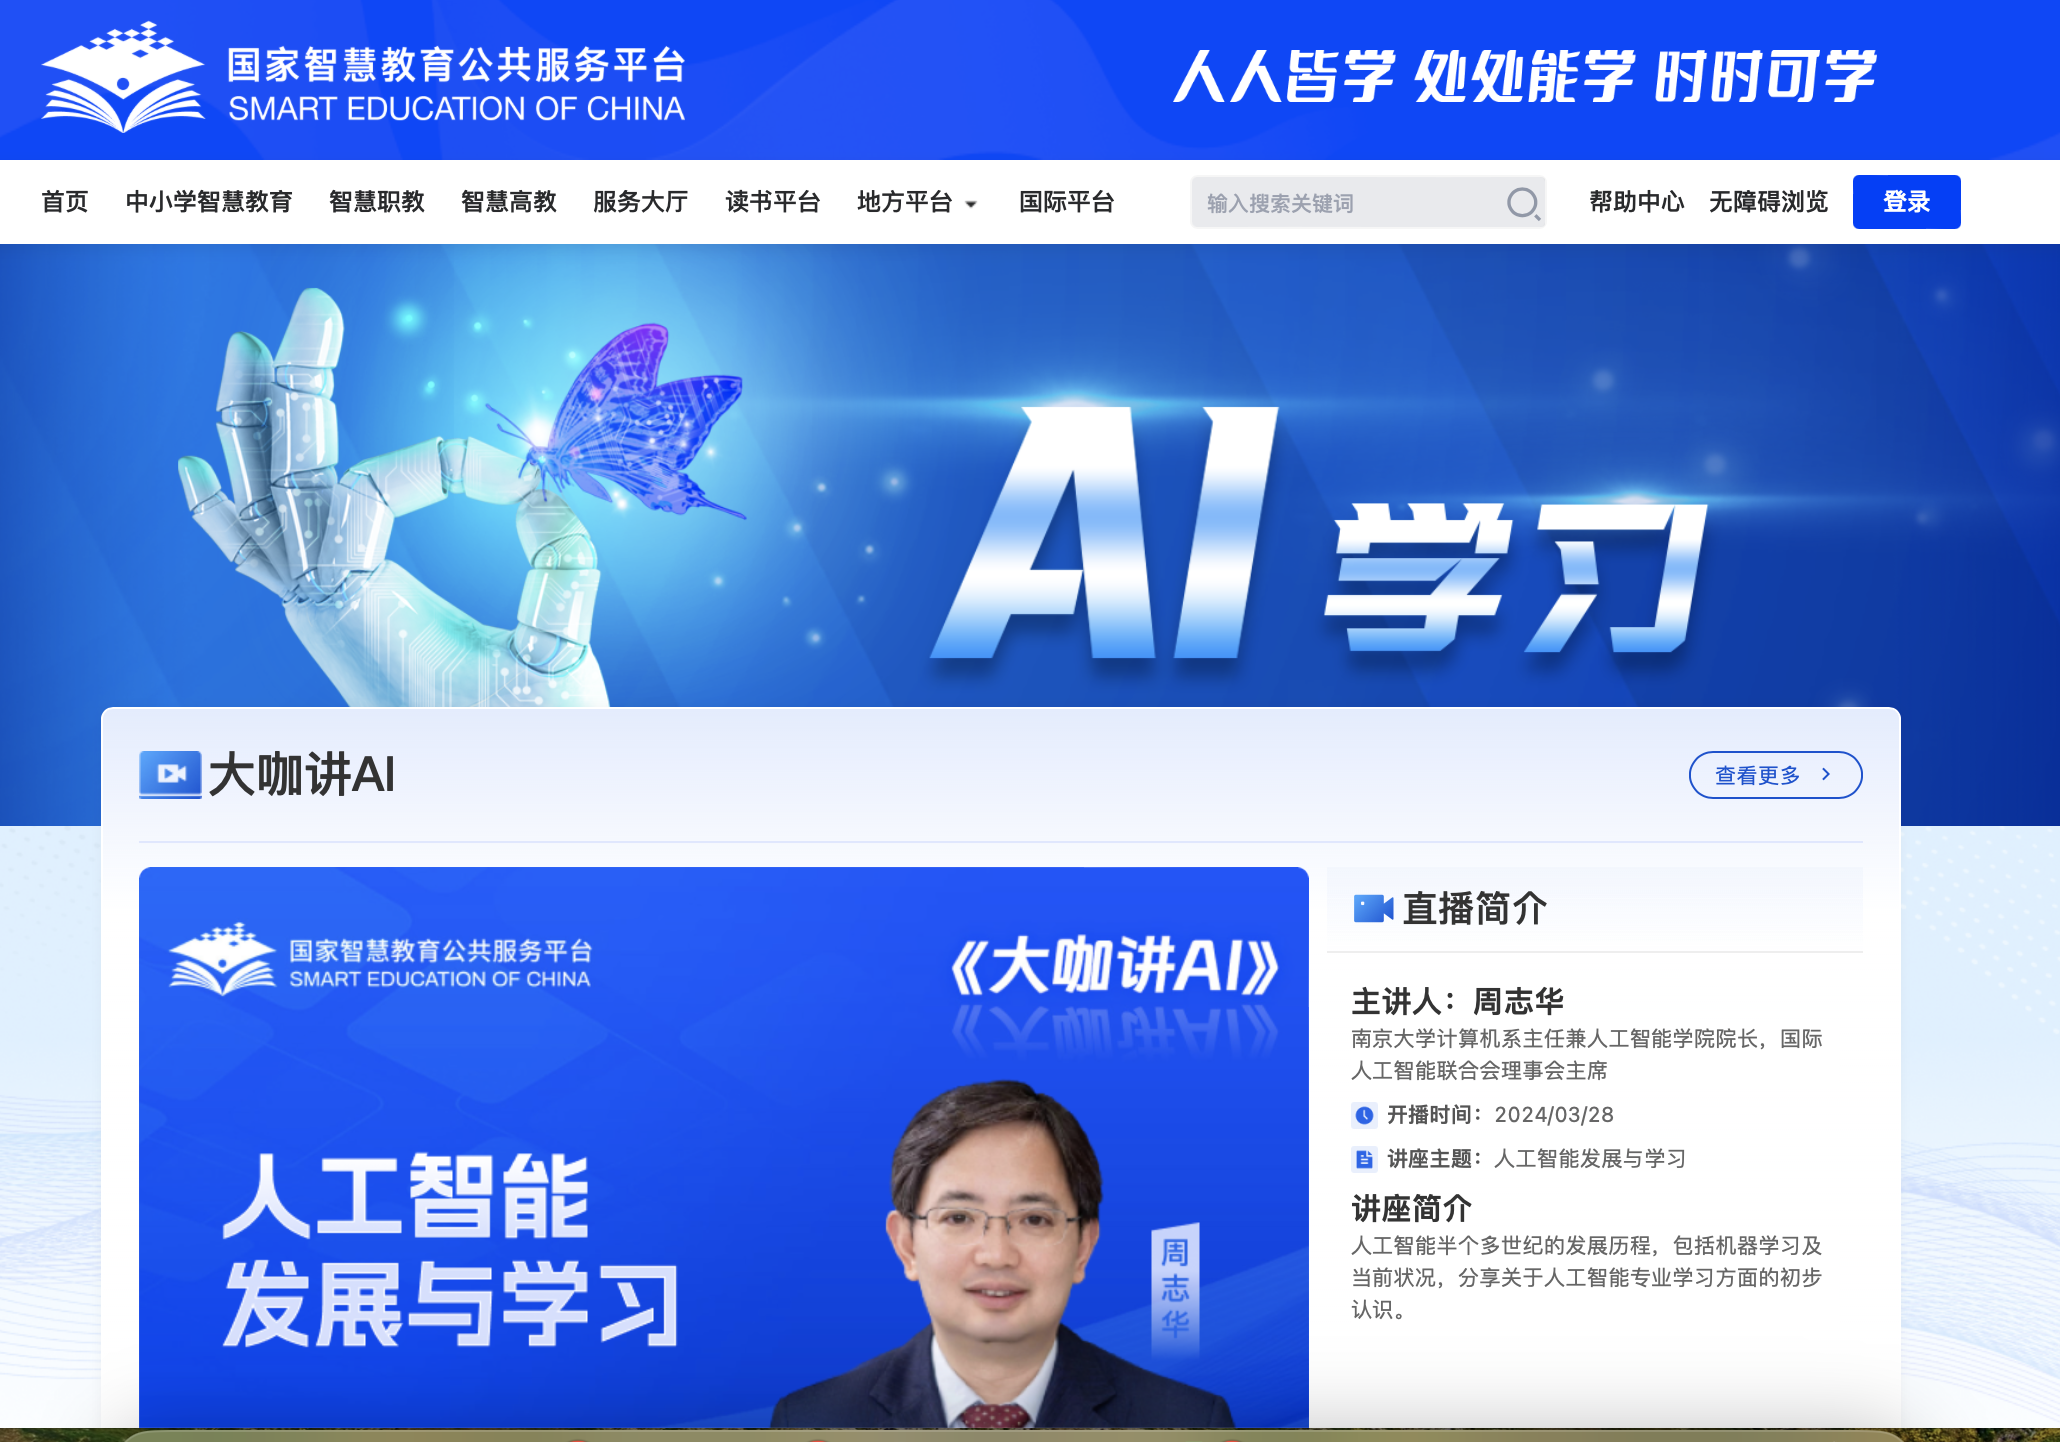 國家智慧教育公共服務平台「AI學習」專欄截圖。